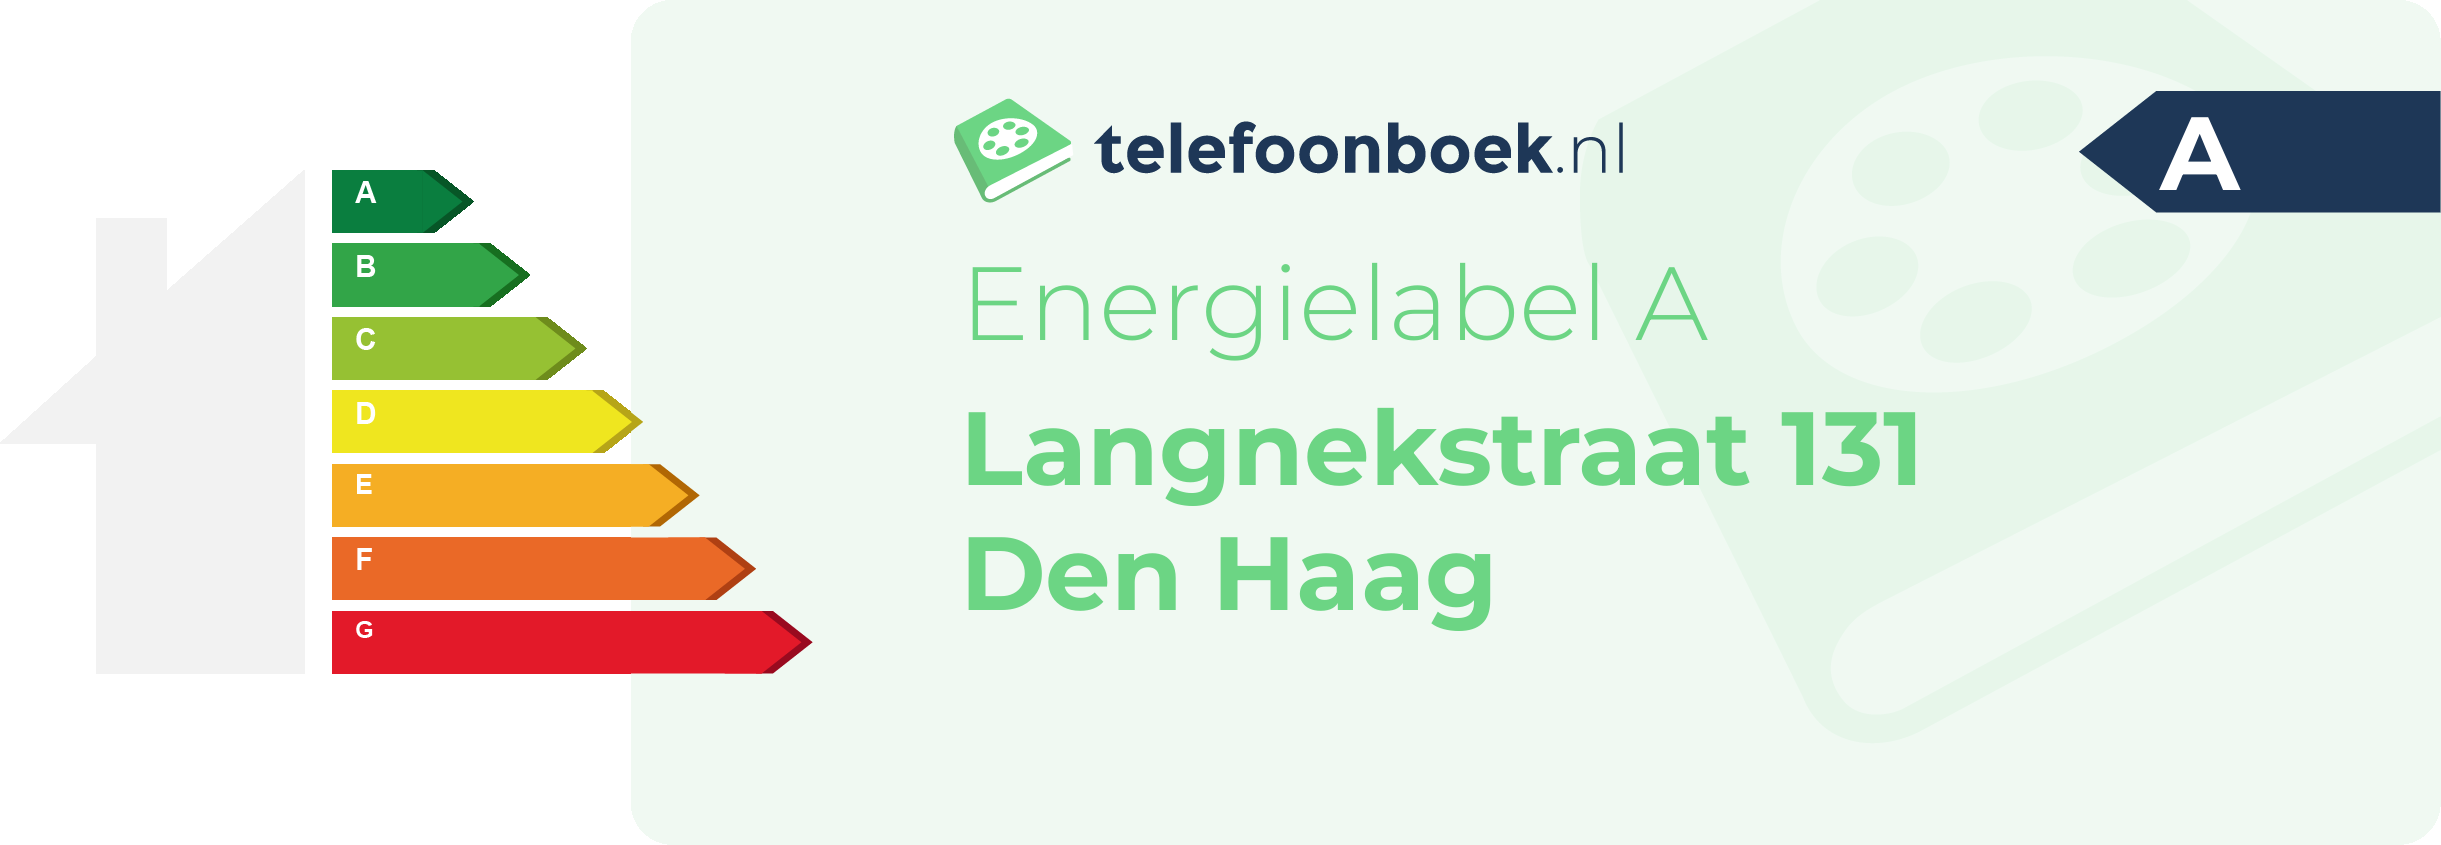 Energielabel Langnekstraat 131 Den Haag